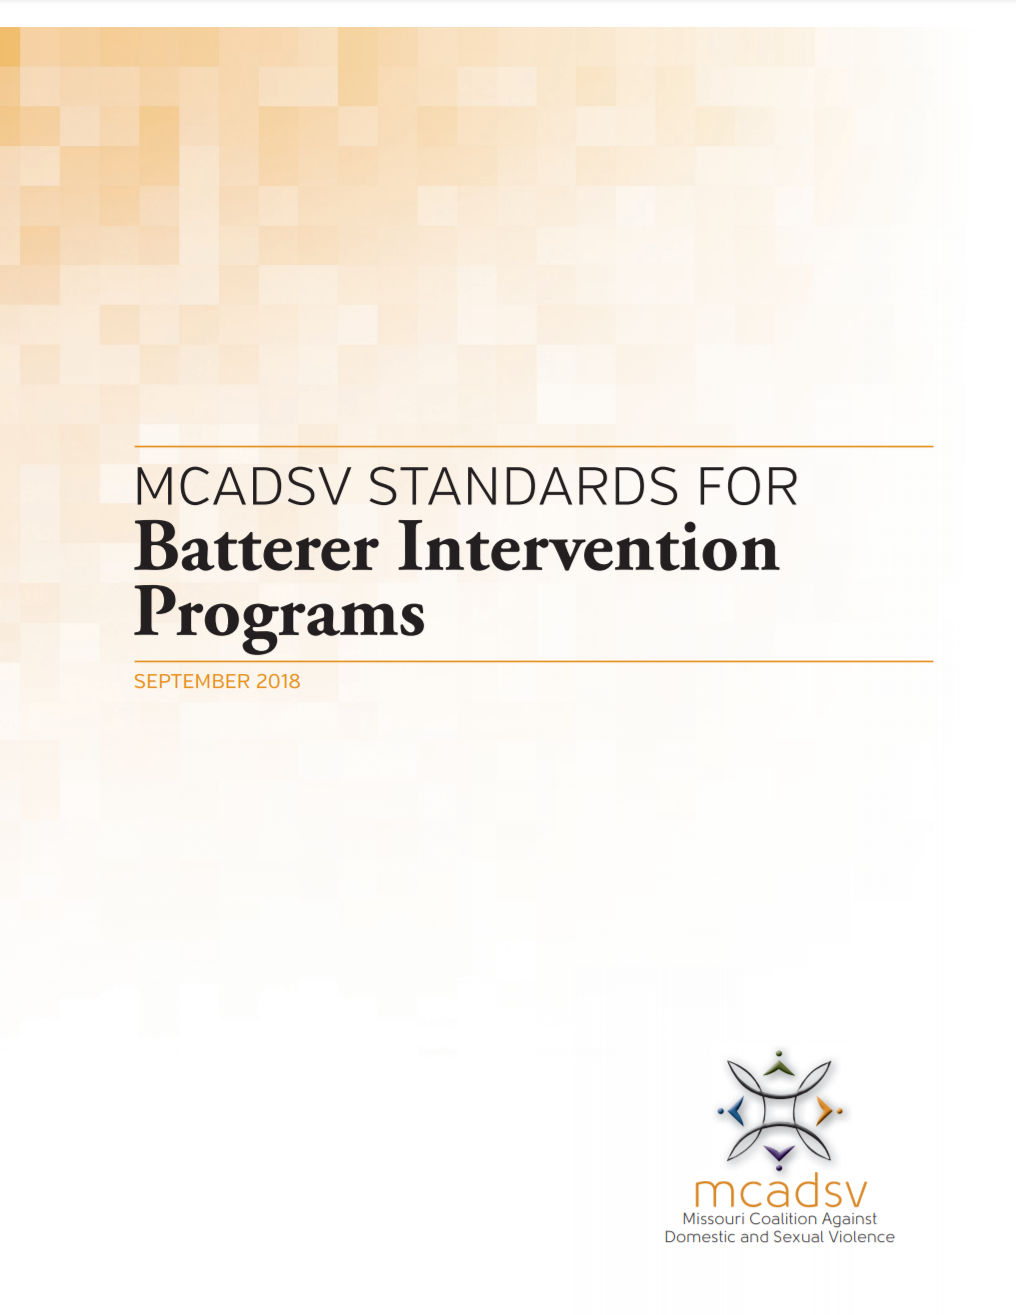 3.3.14 Standards and Guidelines for Batterer Intervention Programs